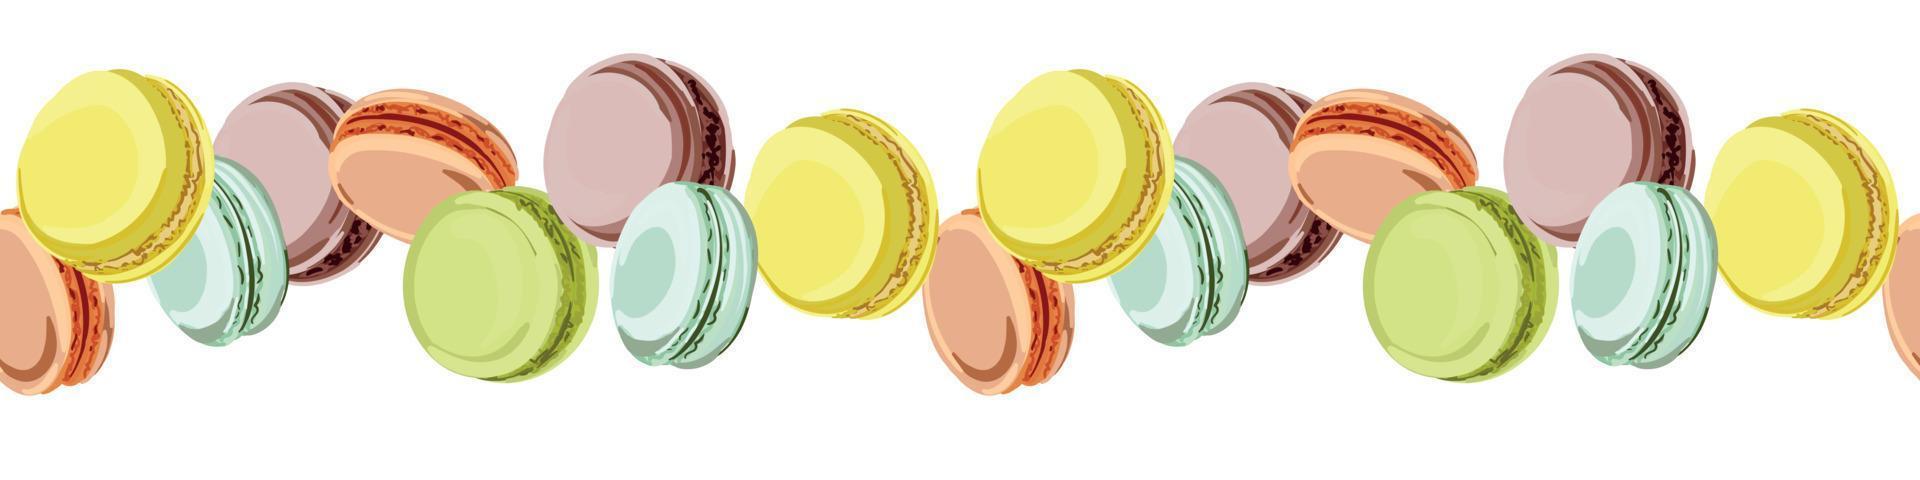 padrão sem emenda de macarons coloridos. doces franceses macaroons isolados no fundo branco. ilustração vetorial em estilo simples. vetor